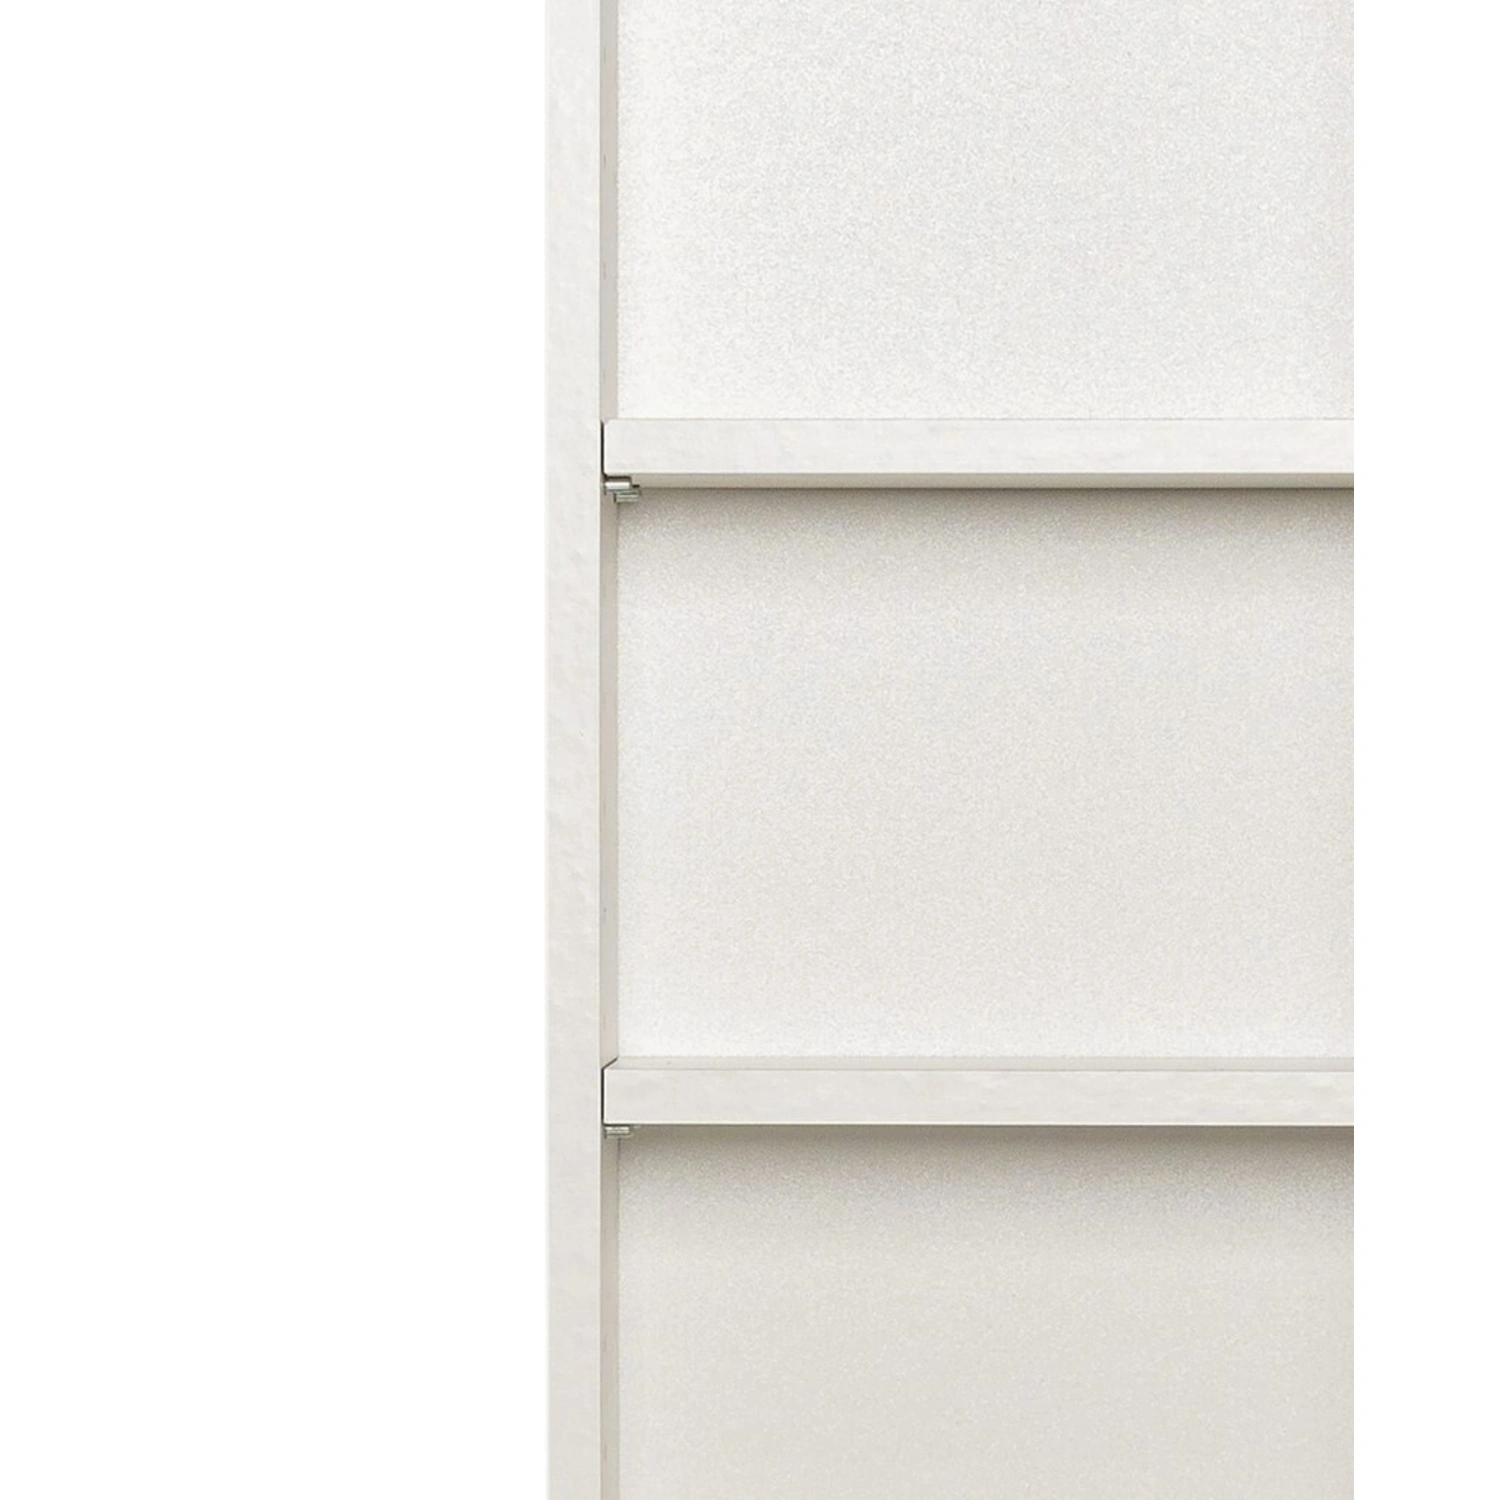 HELD MÖBEL Hängeschrank »Porta«, BxHxT: 30 x 64 x 20 cm | Vorratsschränke